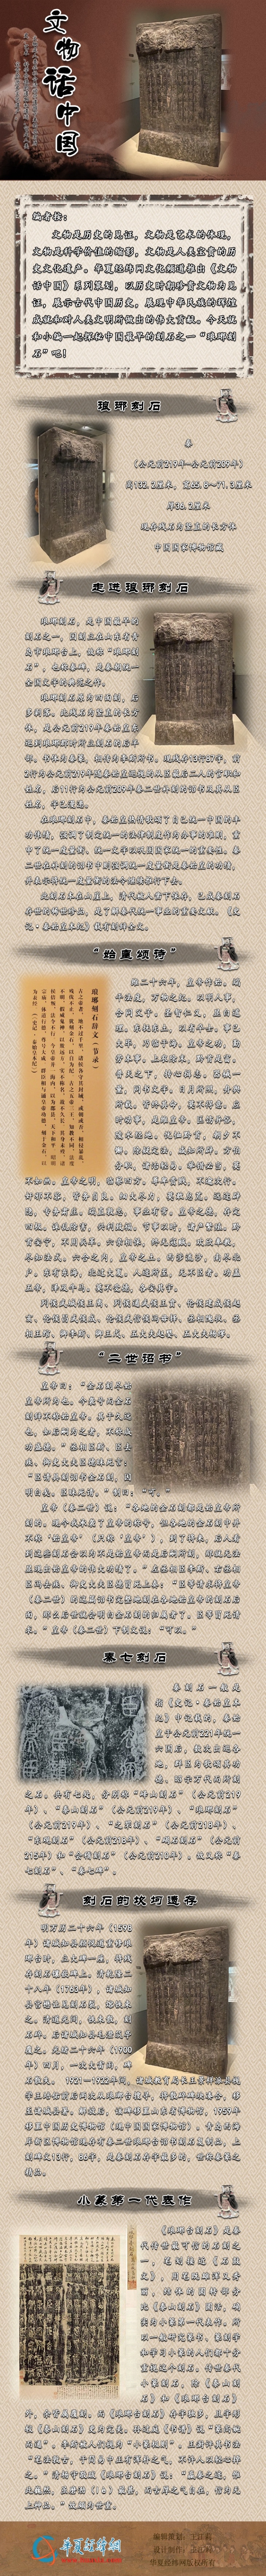 文物话中国——琅琊刻石